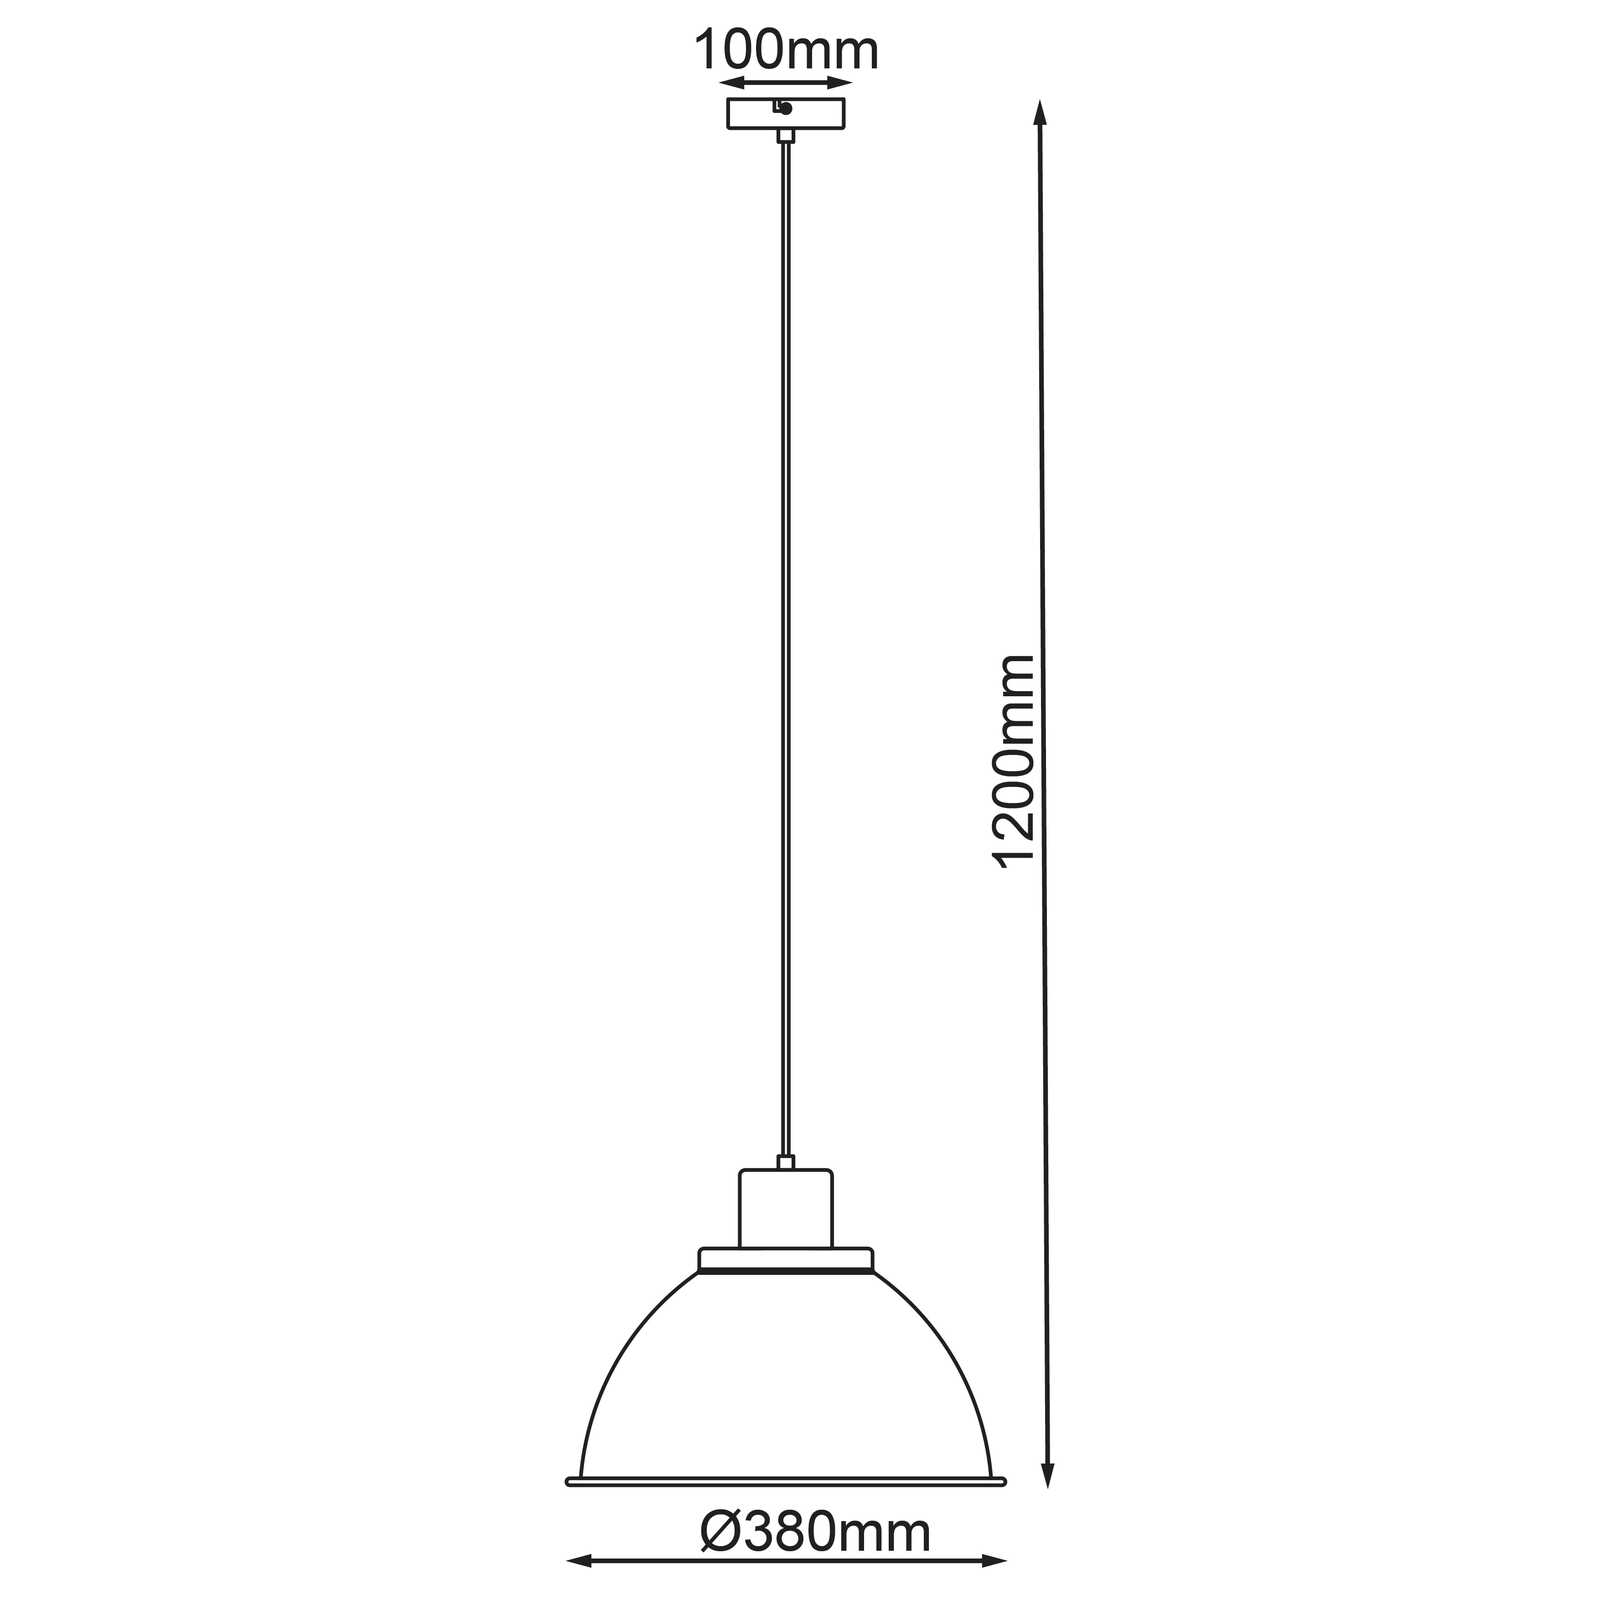             Houten hanglamp - Franziska 9 - Rood
        